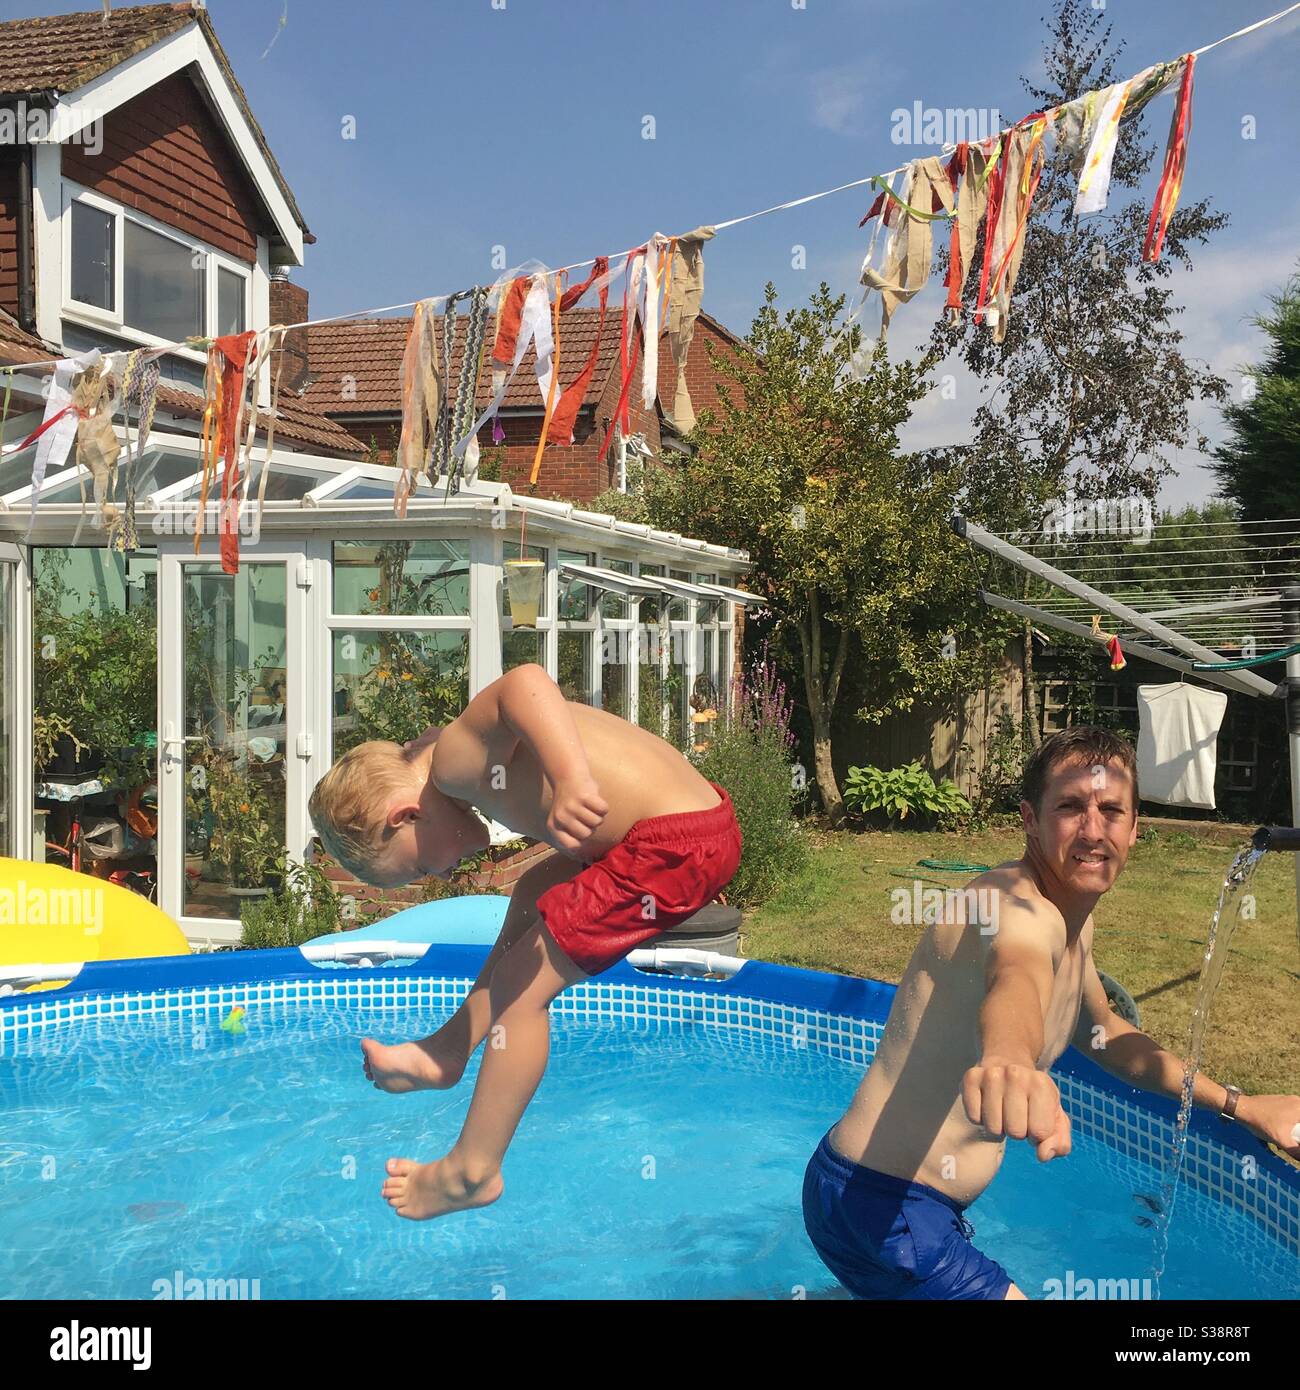 Garçon de trois ans qui saute dans une piscine de jardin. Hampshire, Angleterre, Royaume-Uni. Banque D'Images